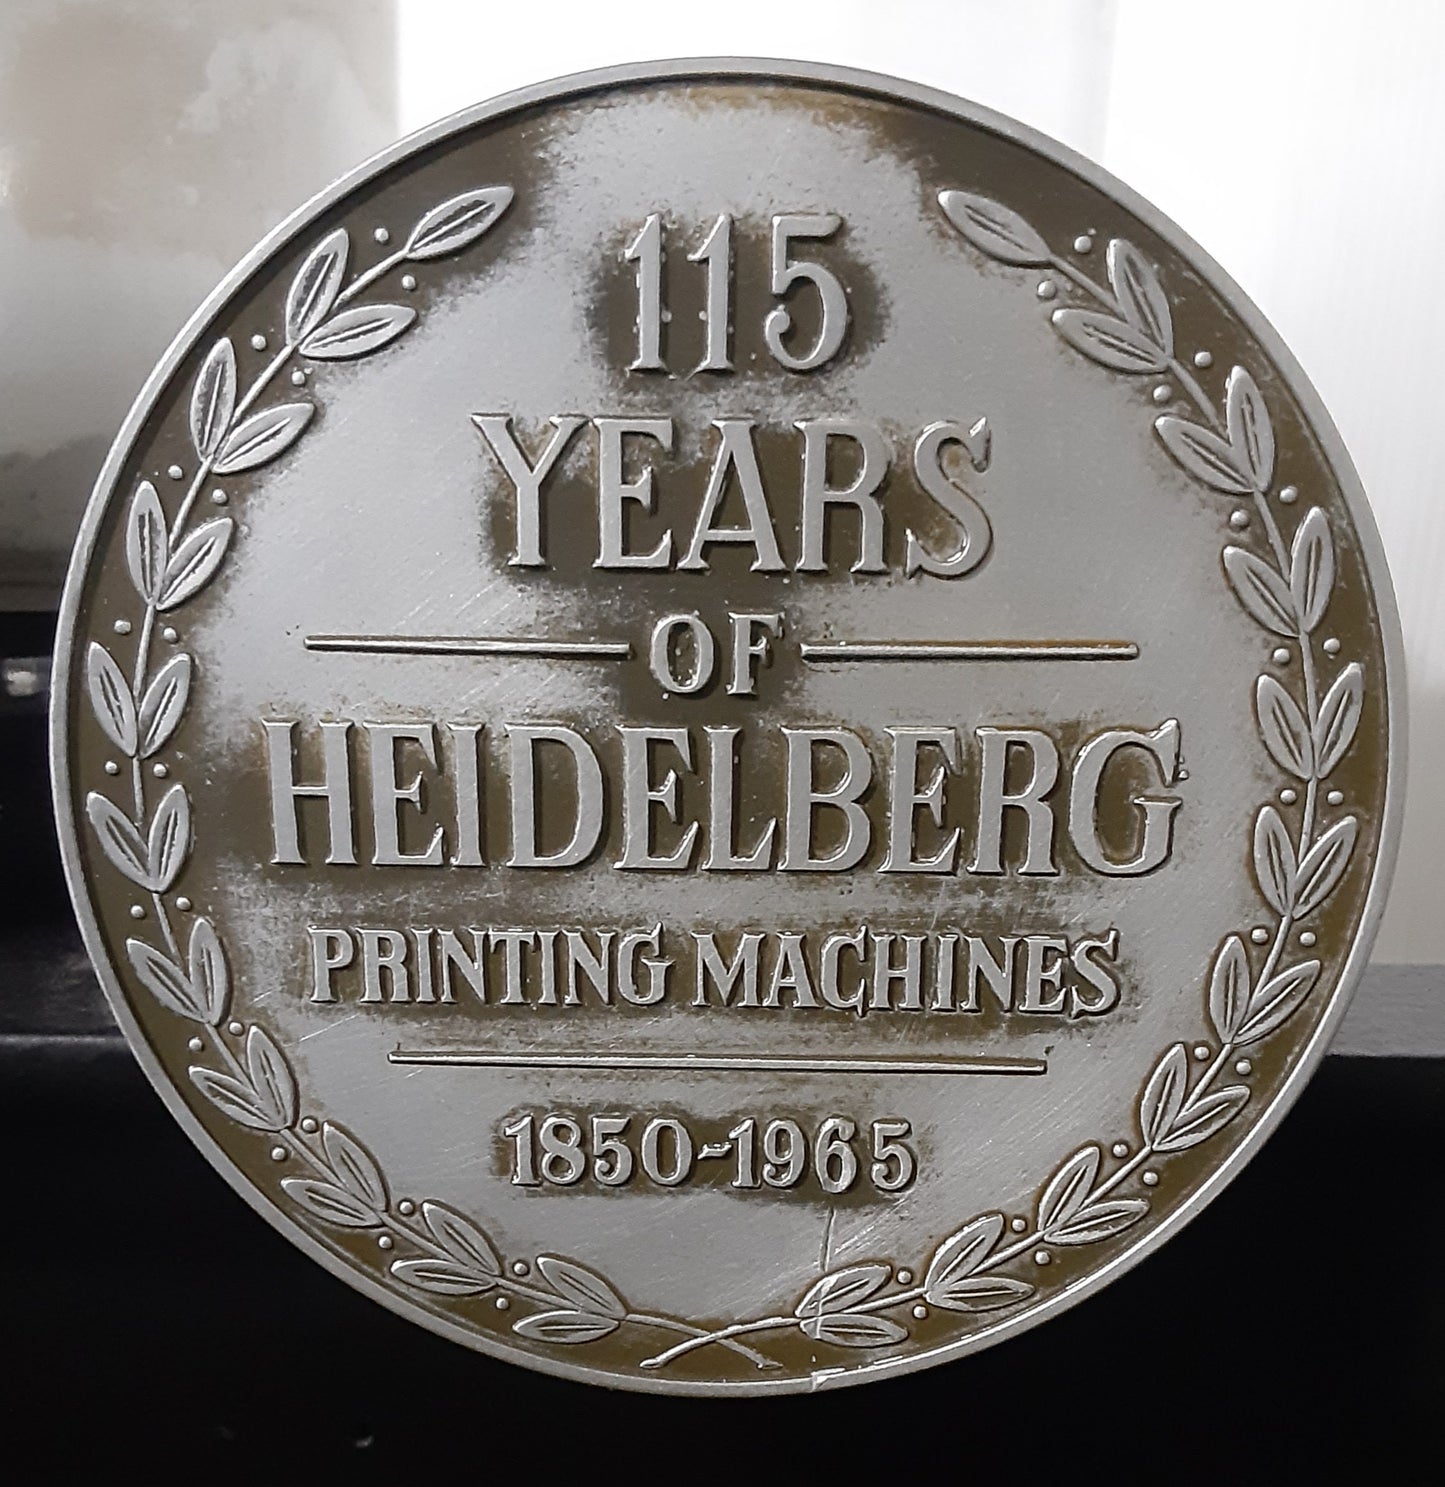 [活版印刷仕様] ハイデルベルグ製 プラテンT型 最大260×380mm対応 heidelberg1-tplaten380x260-3055